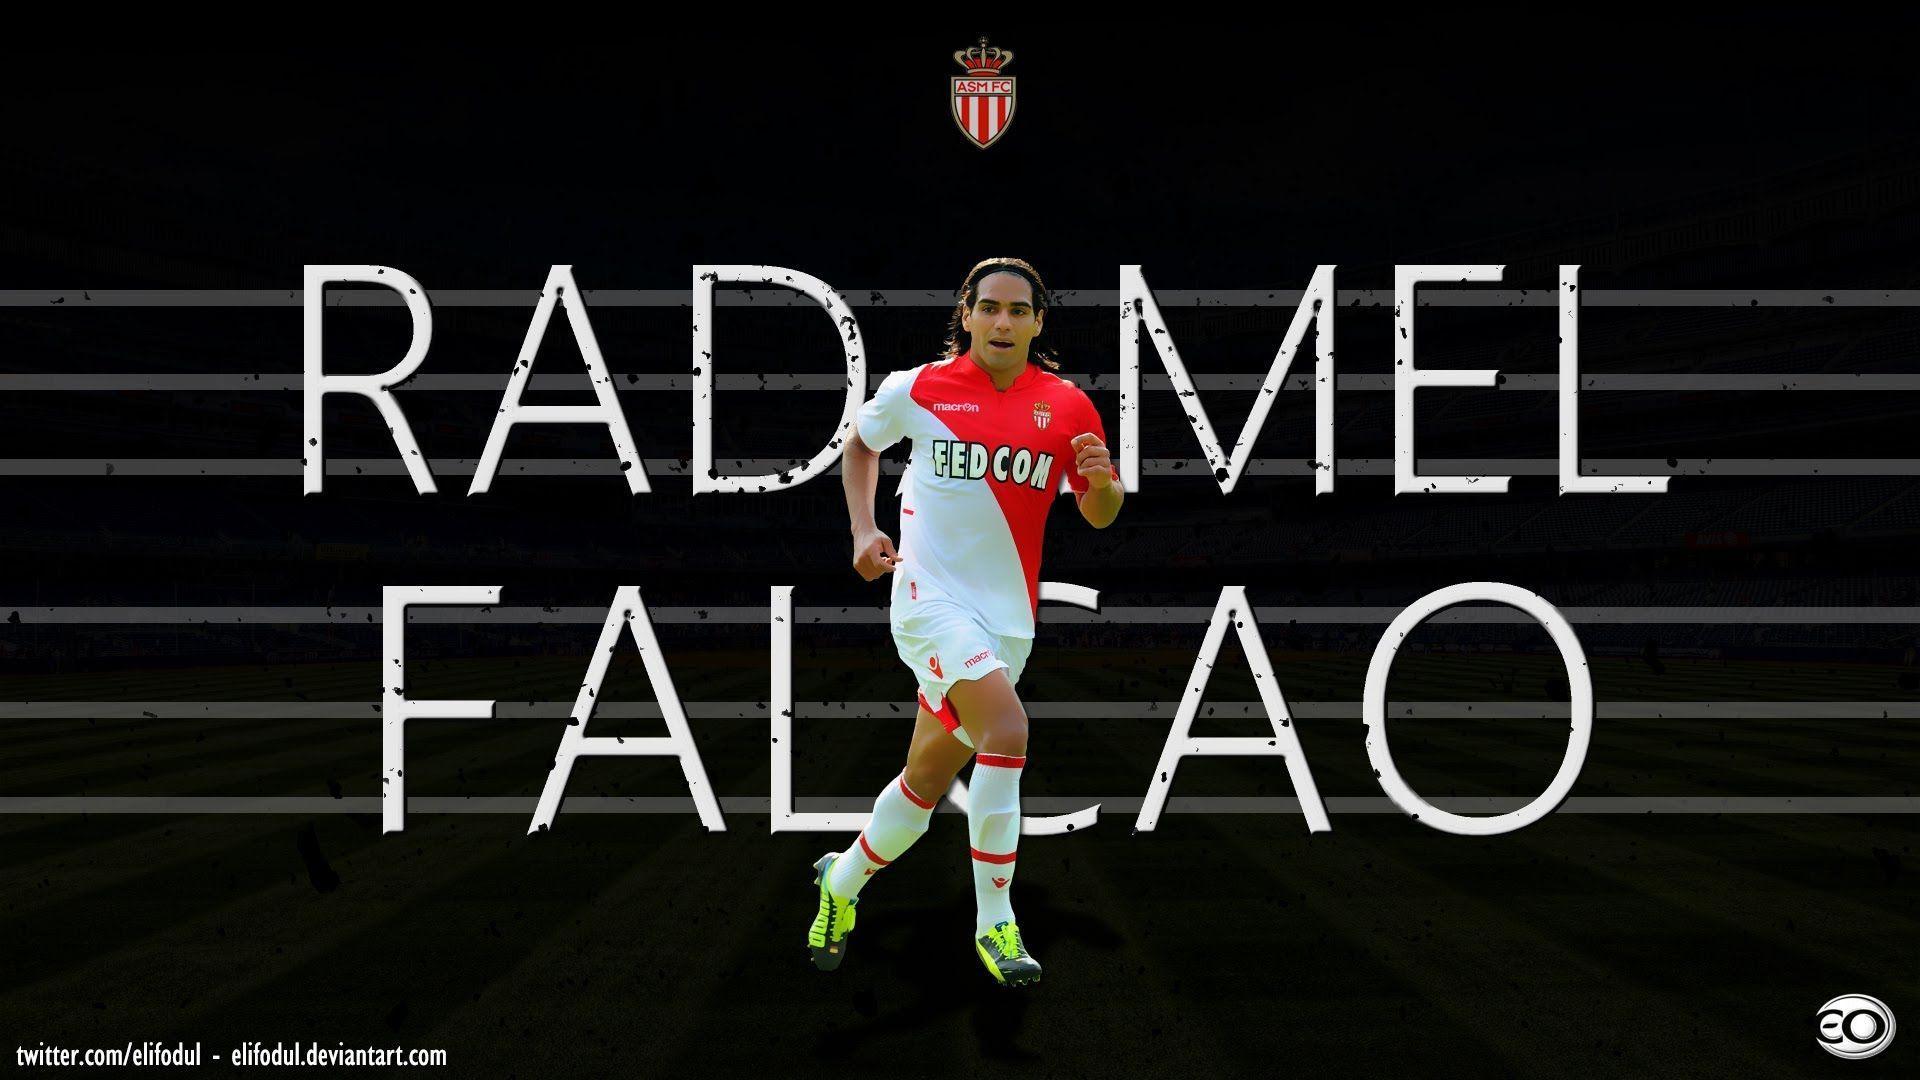 Radamel Falcao. All Goals For AS Monaco 2014